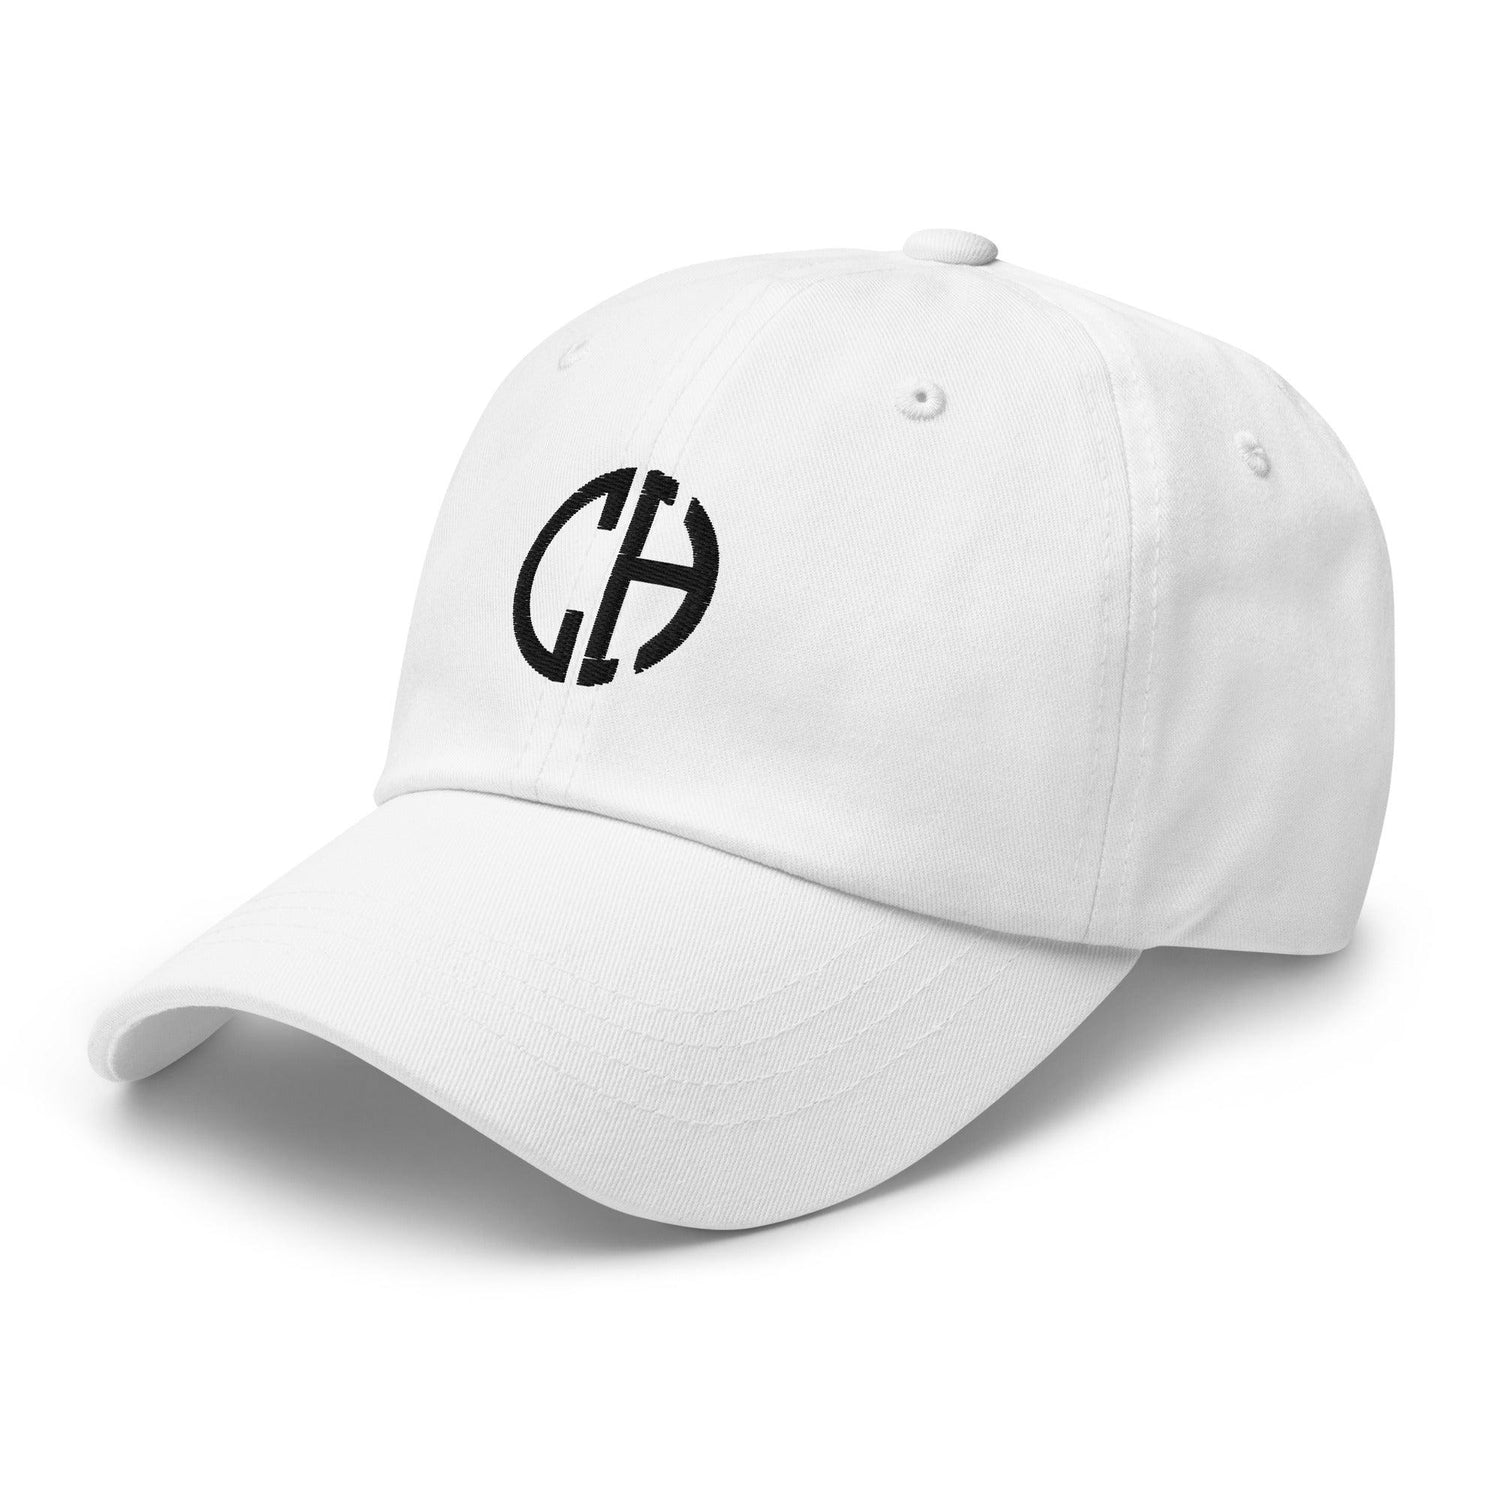 Clay Howard "Elite" hat - Fan Arch